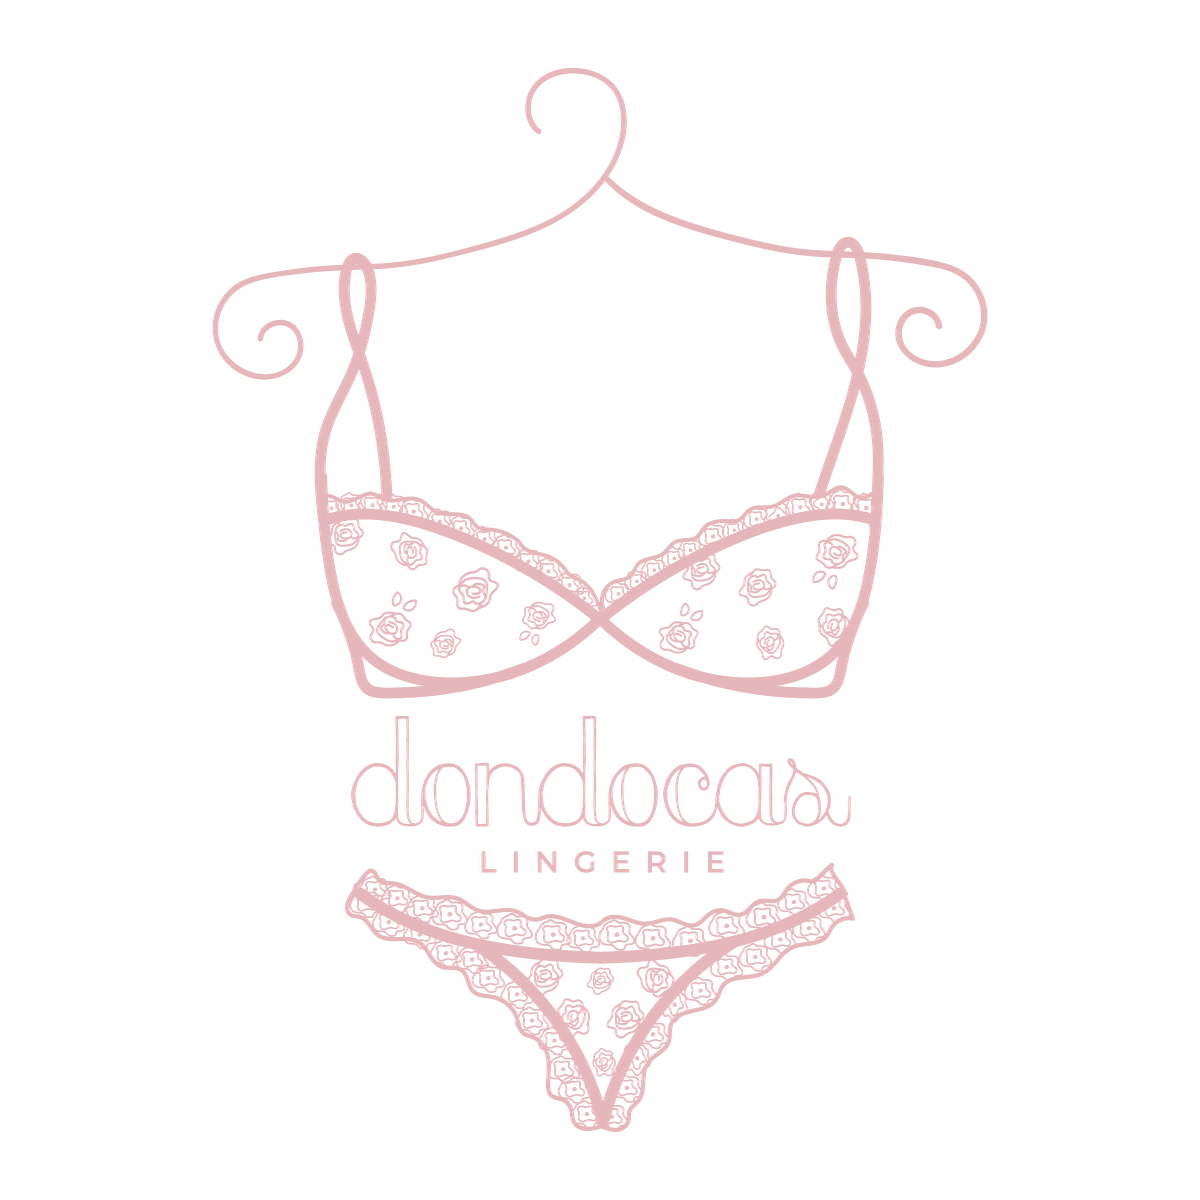 Dondocas lingerie